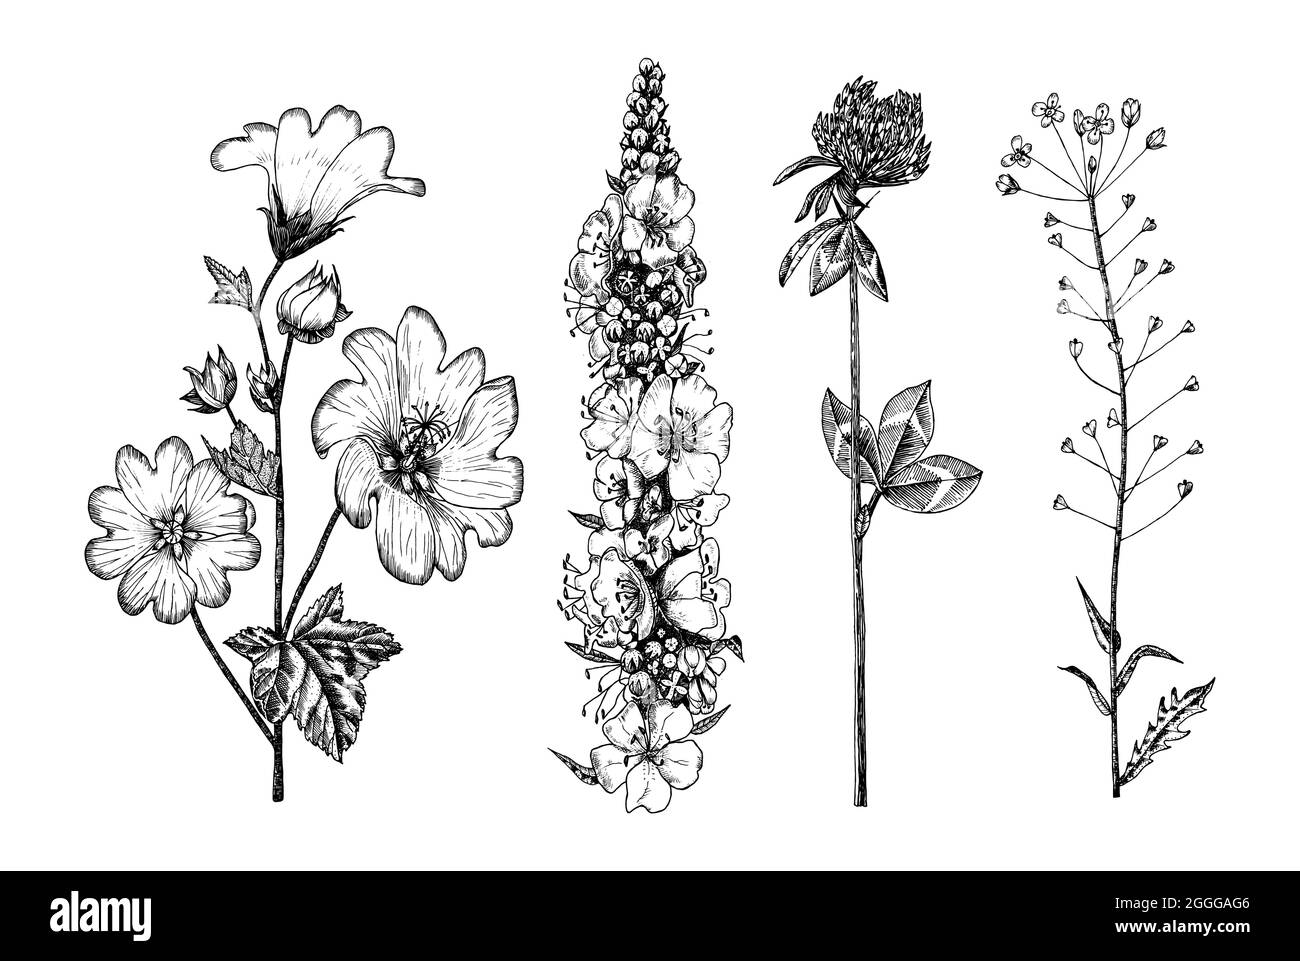 Althaea e Clover o trifoglio e Capsella e Mullein o verbascum. Illustrazione di pianta botanica. Erbe erbacee perenni d'epoca. Disegnato a mano Illustrazione Vettoriale